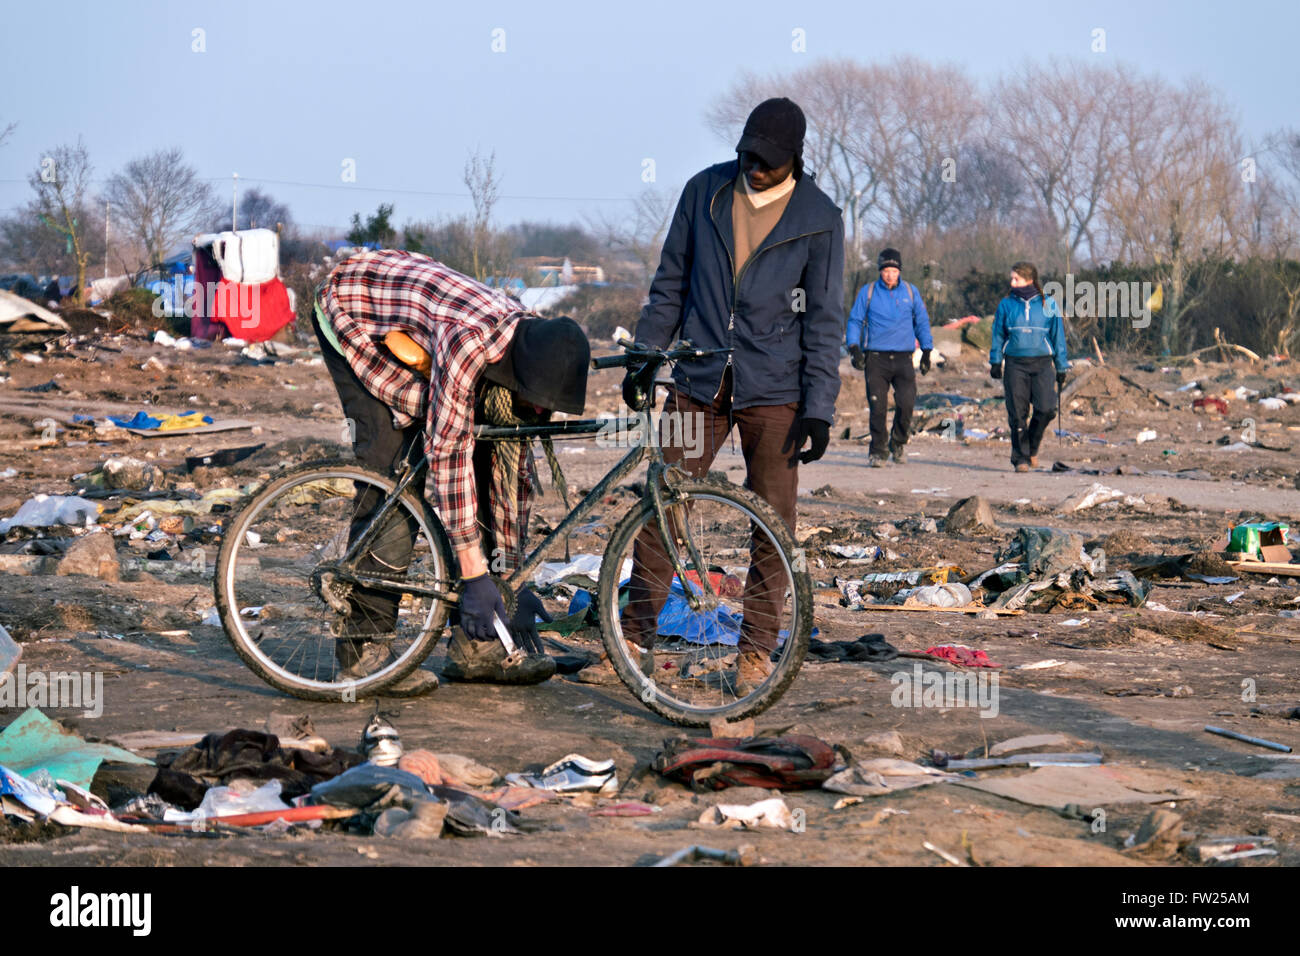 La jungle camp de réfugiés migrants à Calais et la France où des milliers de réfugiés ont vécu dans la boue et l'état sordide espérant Banque D'Images